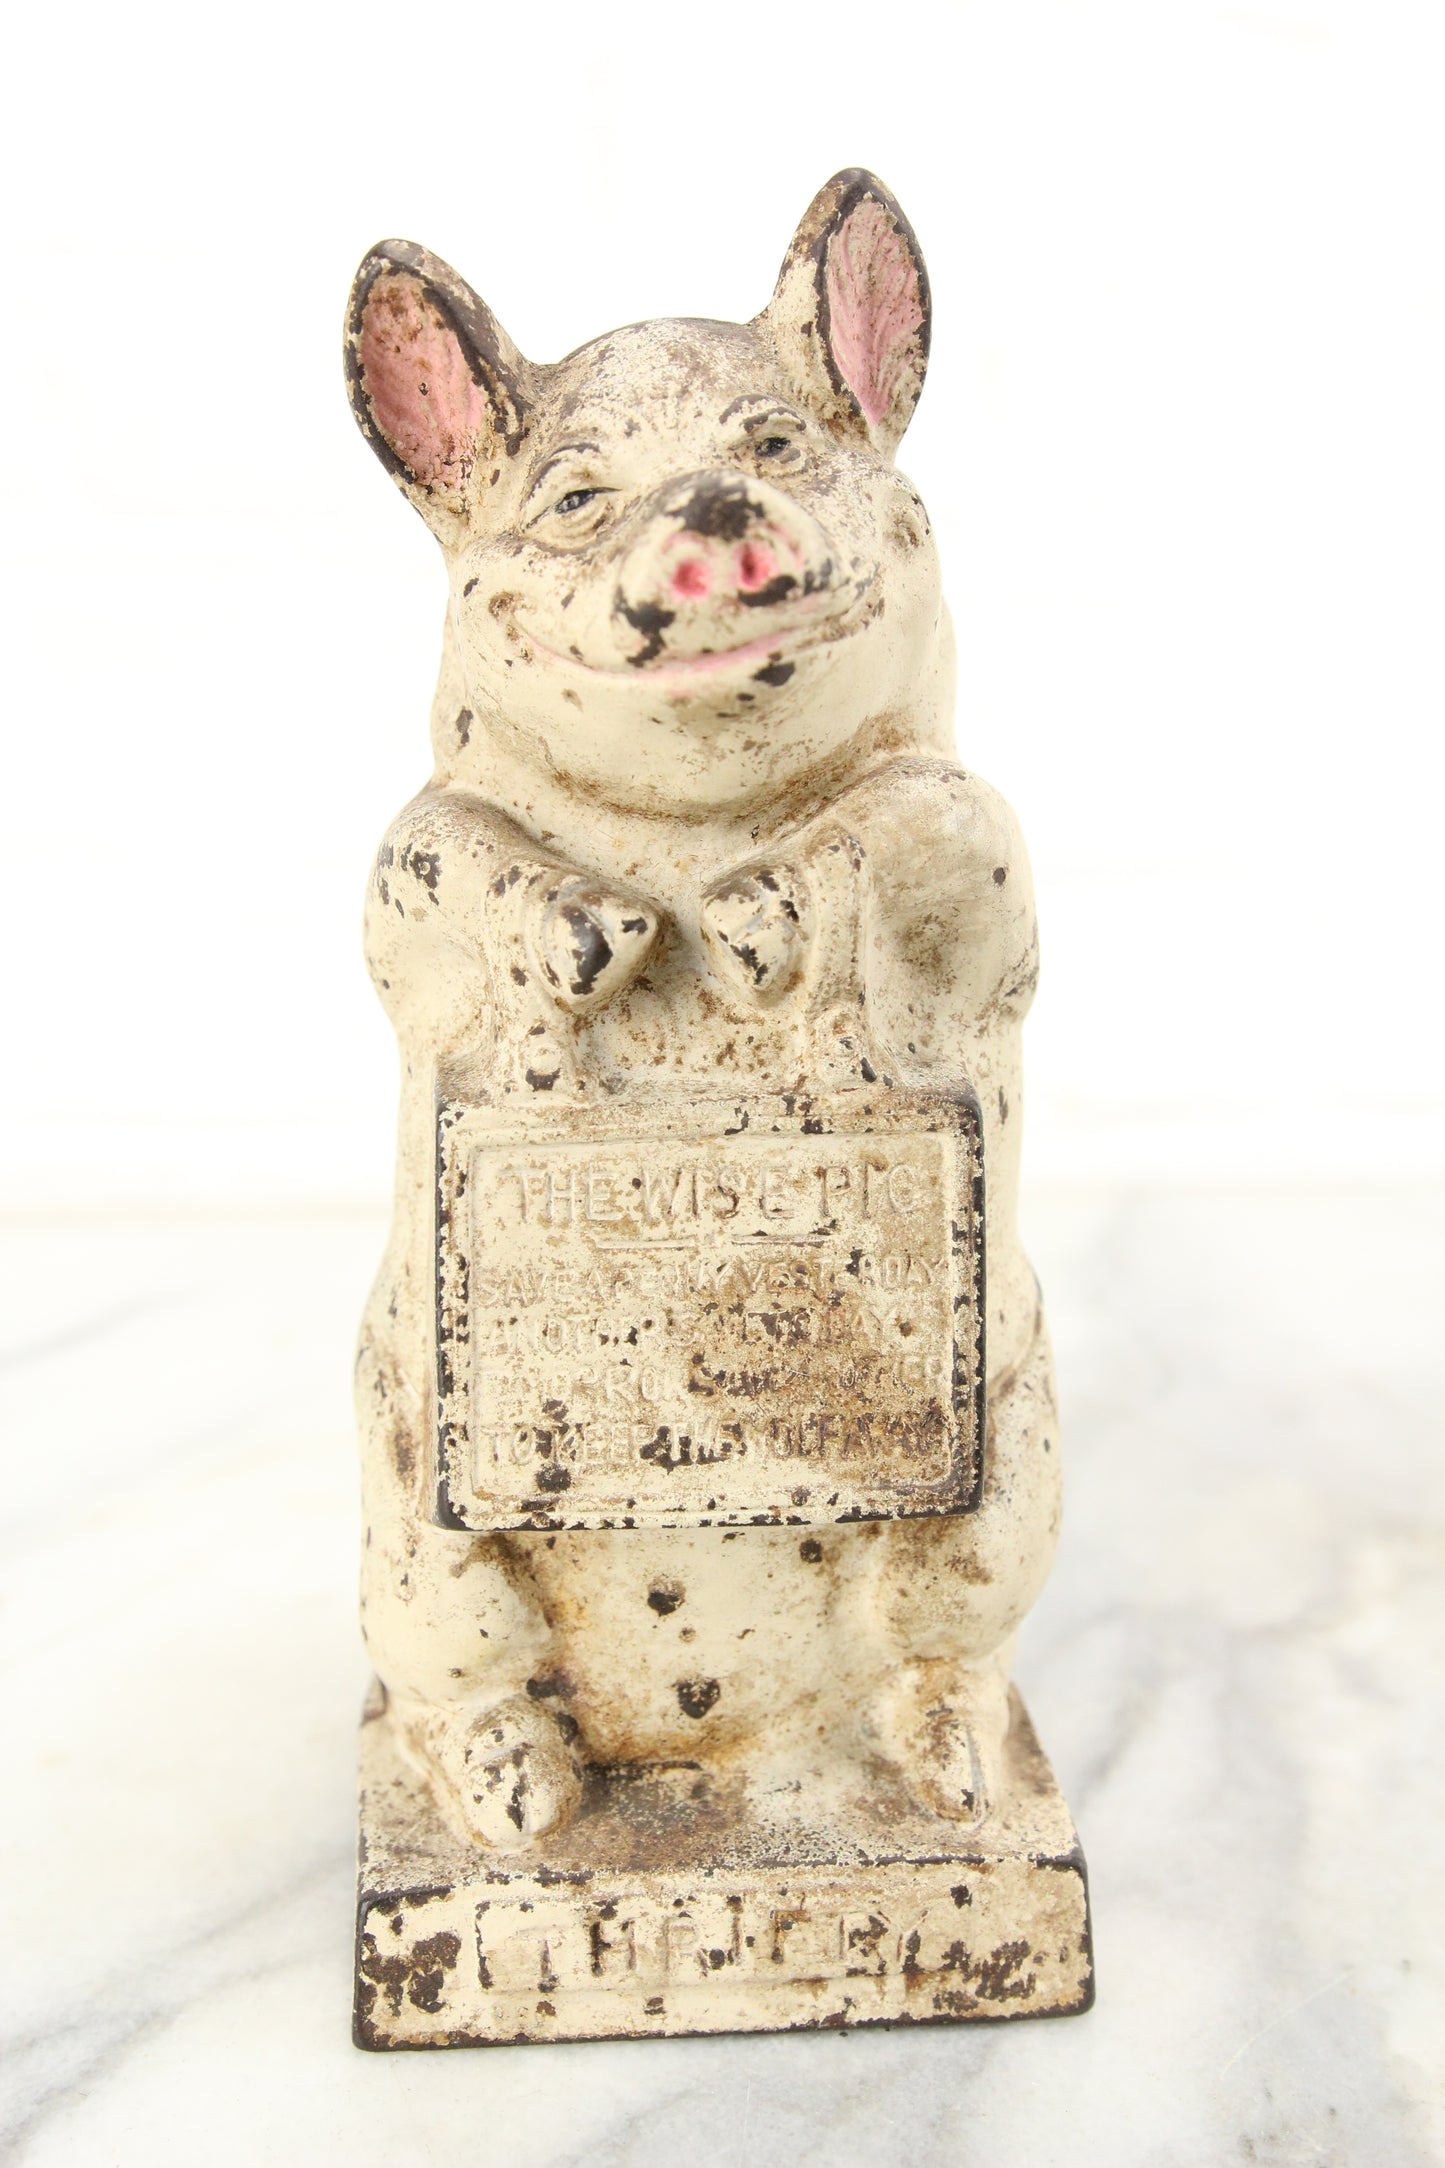 The Wise Pig "Thrifty" Cast Iron Still Bank Piggy Bank, Copyright JMR